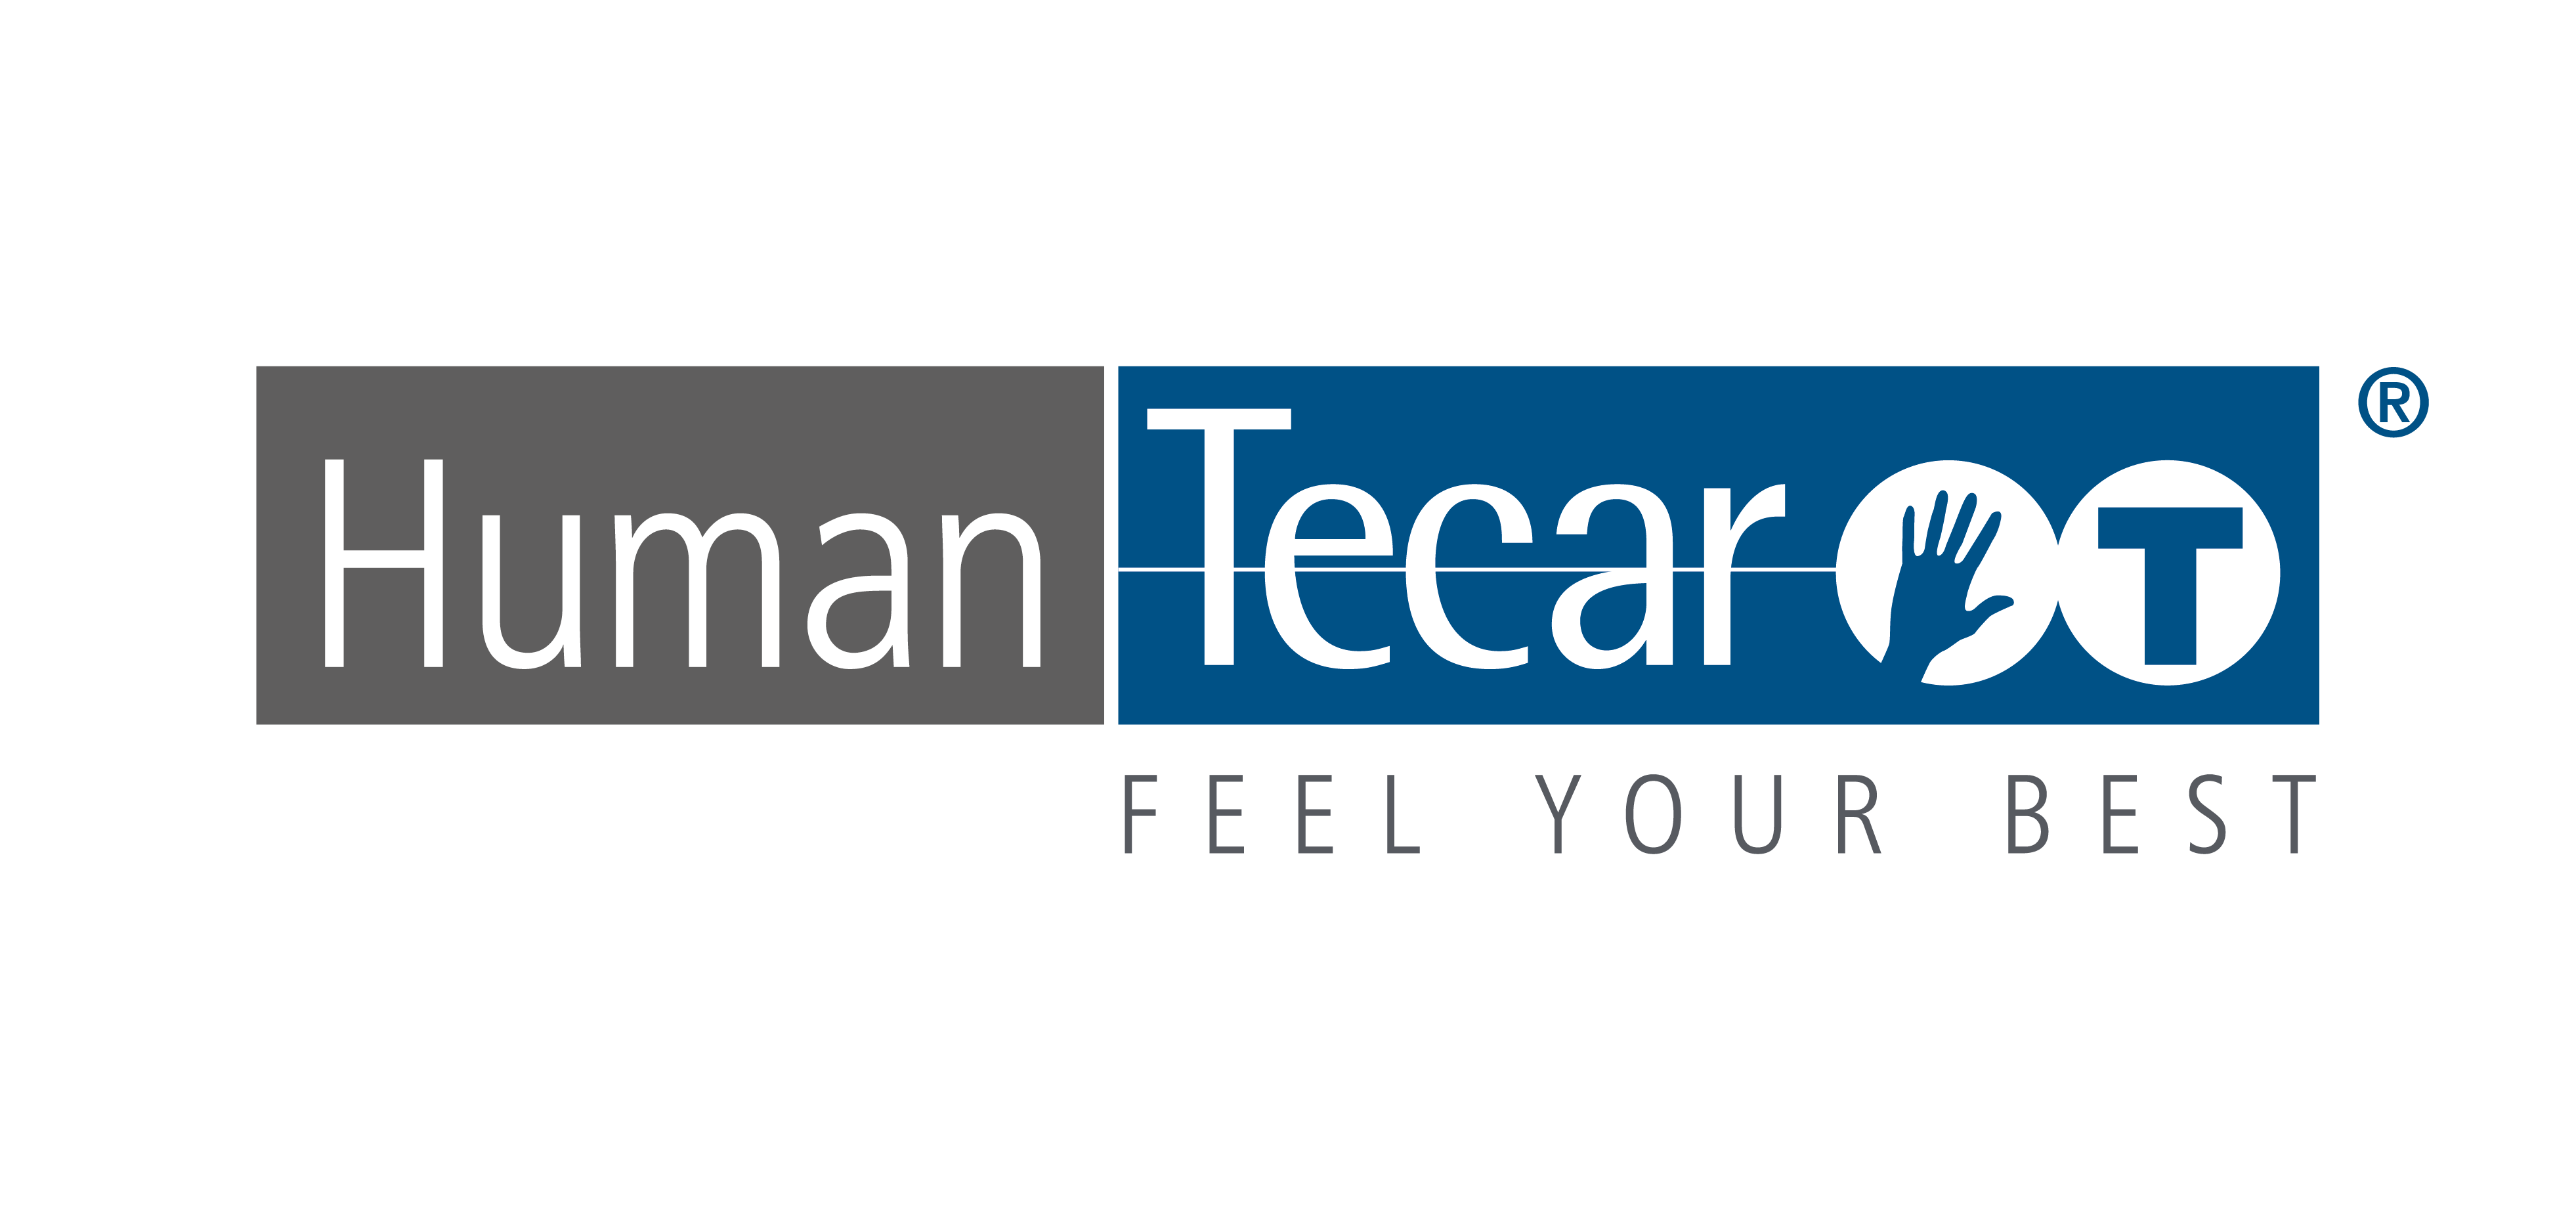 Logo HumanTecar